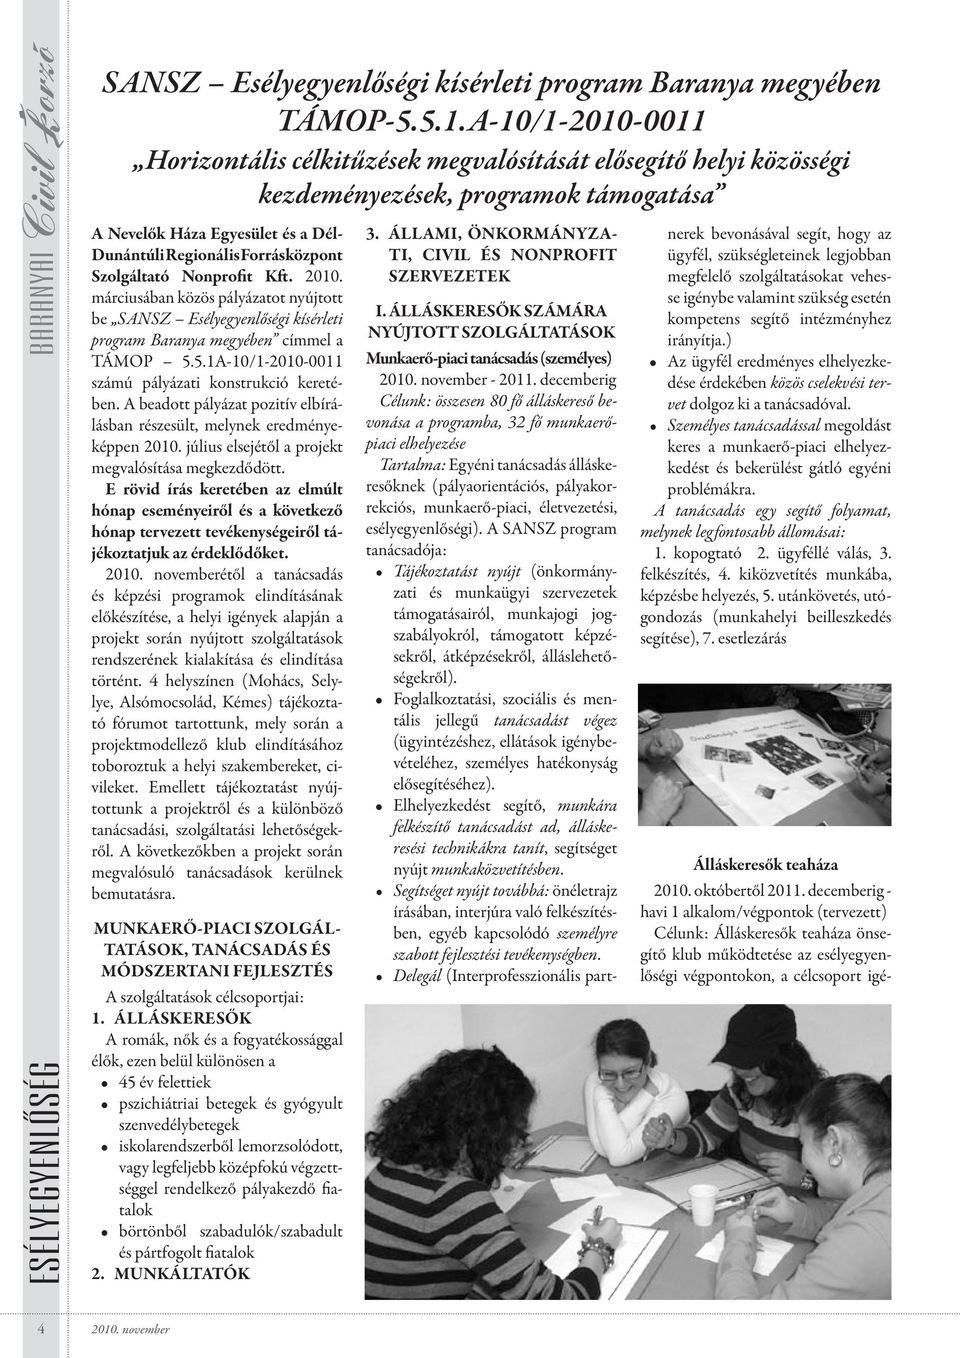 Szolgáltató Nonprofit Kft. 2010. márciusában közös pályázatot nyújtott be SANSZ Esélyegyenlőségi kísérleti program Baranya megyében címmel a TÁMOP 5.